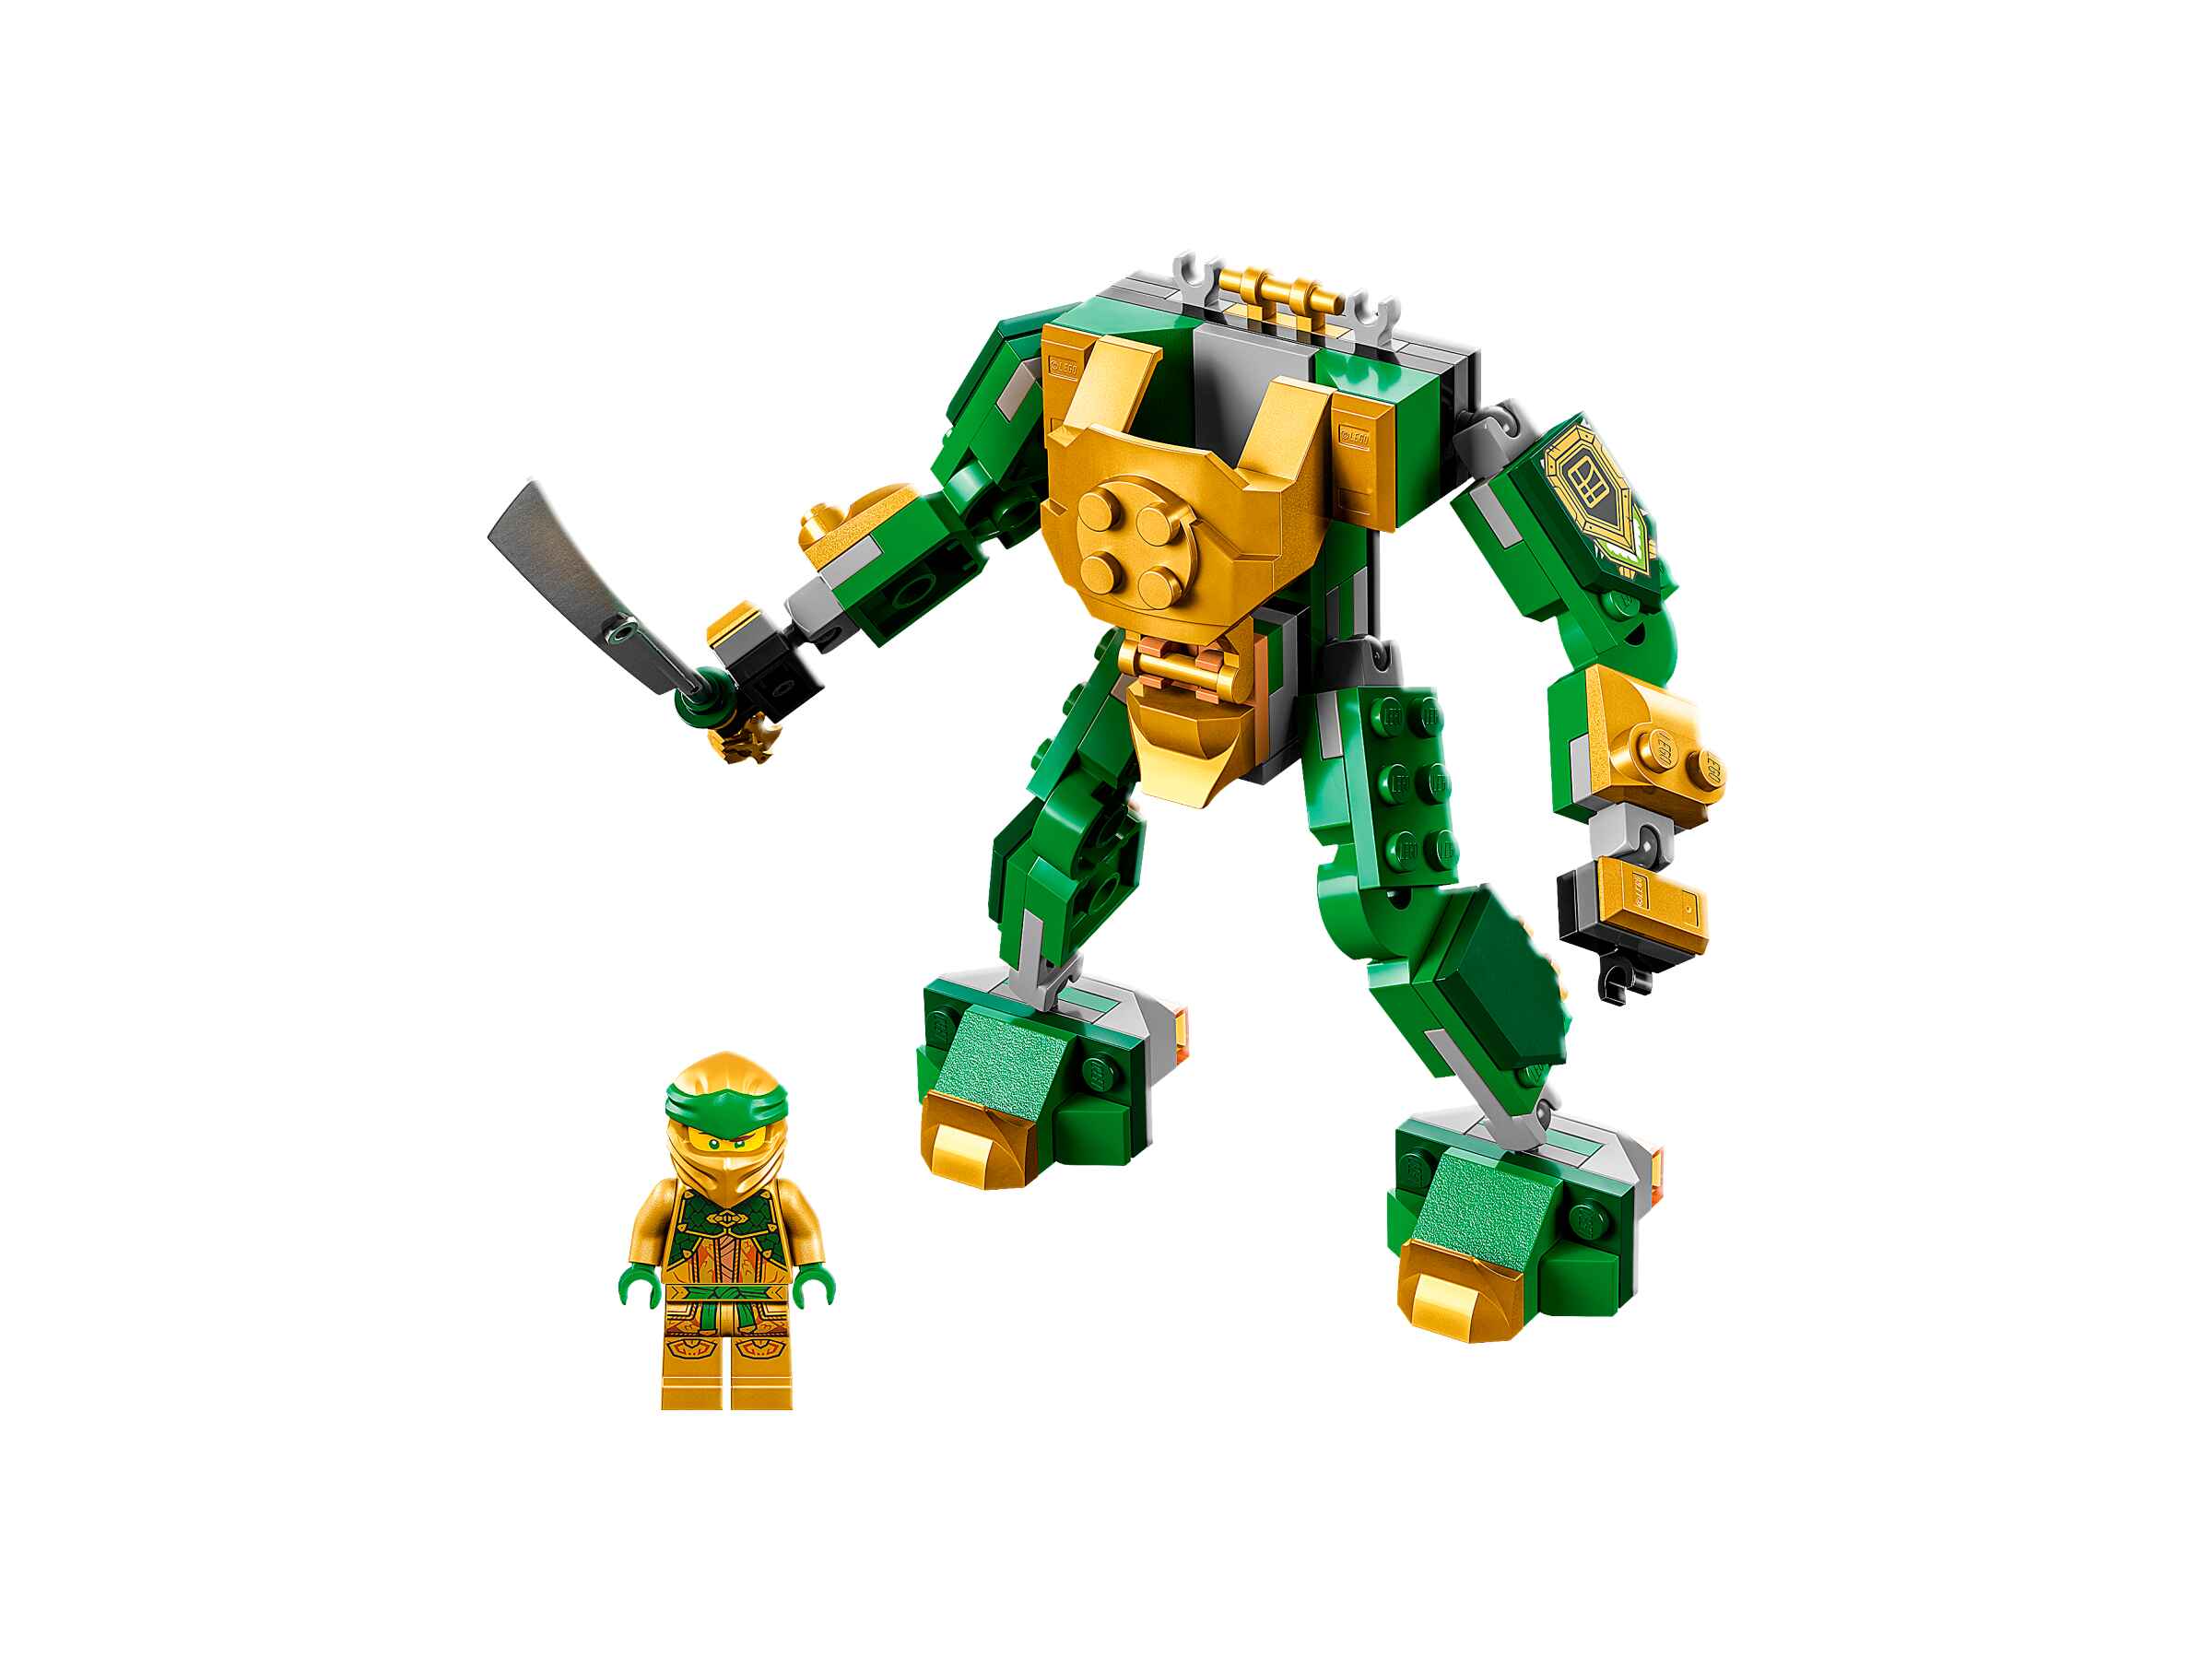 LEGO 71781 NINJAGO Lloyds Mech-Duell EVO, 2 bewegliche Mechs, 2 Minifiguren